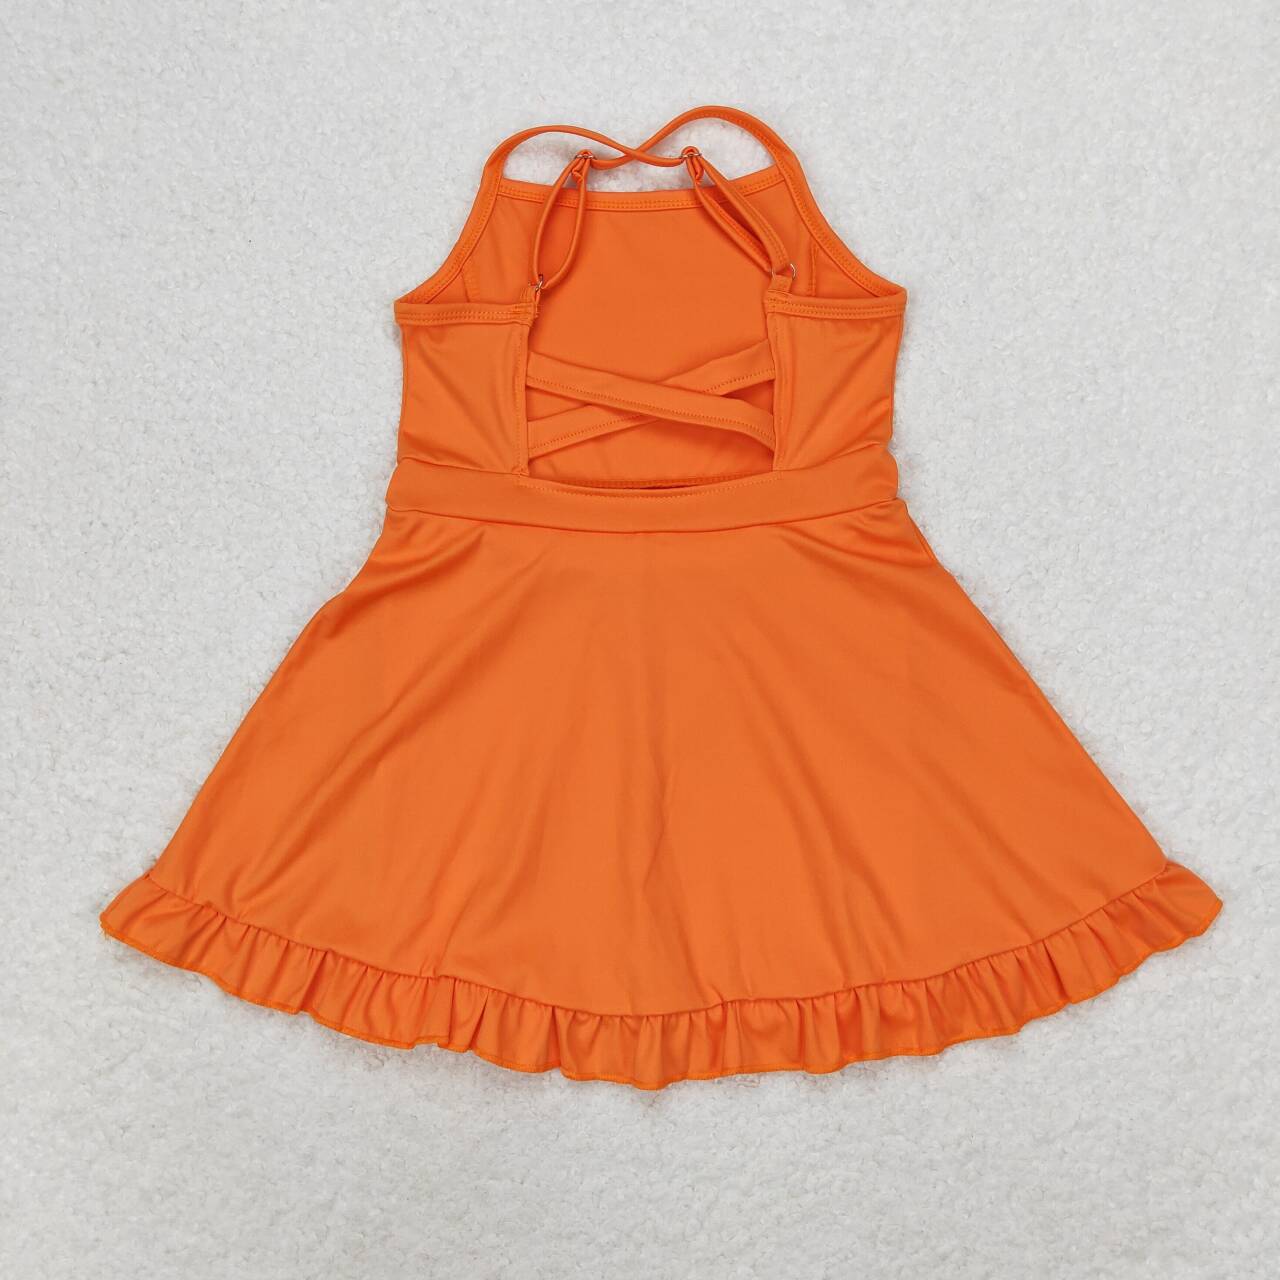 S0442 Solid Orange Sportswear Skirt Swimsuit